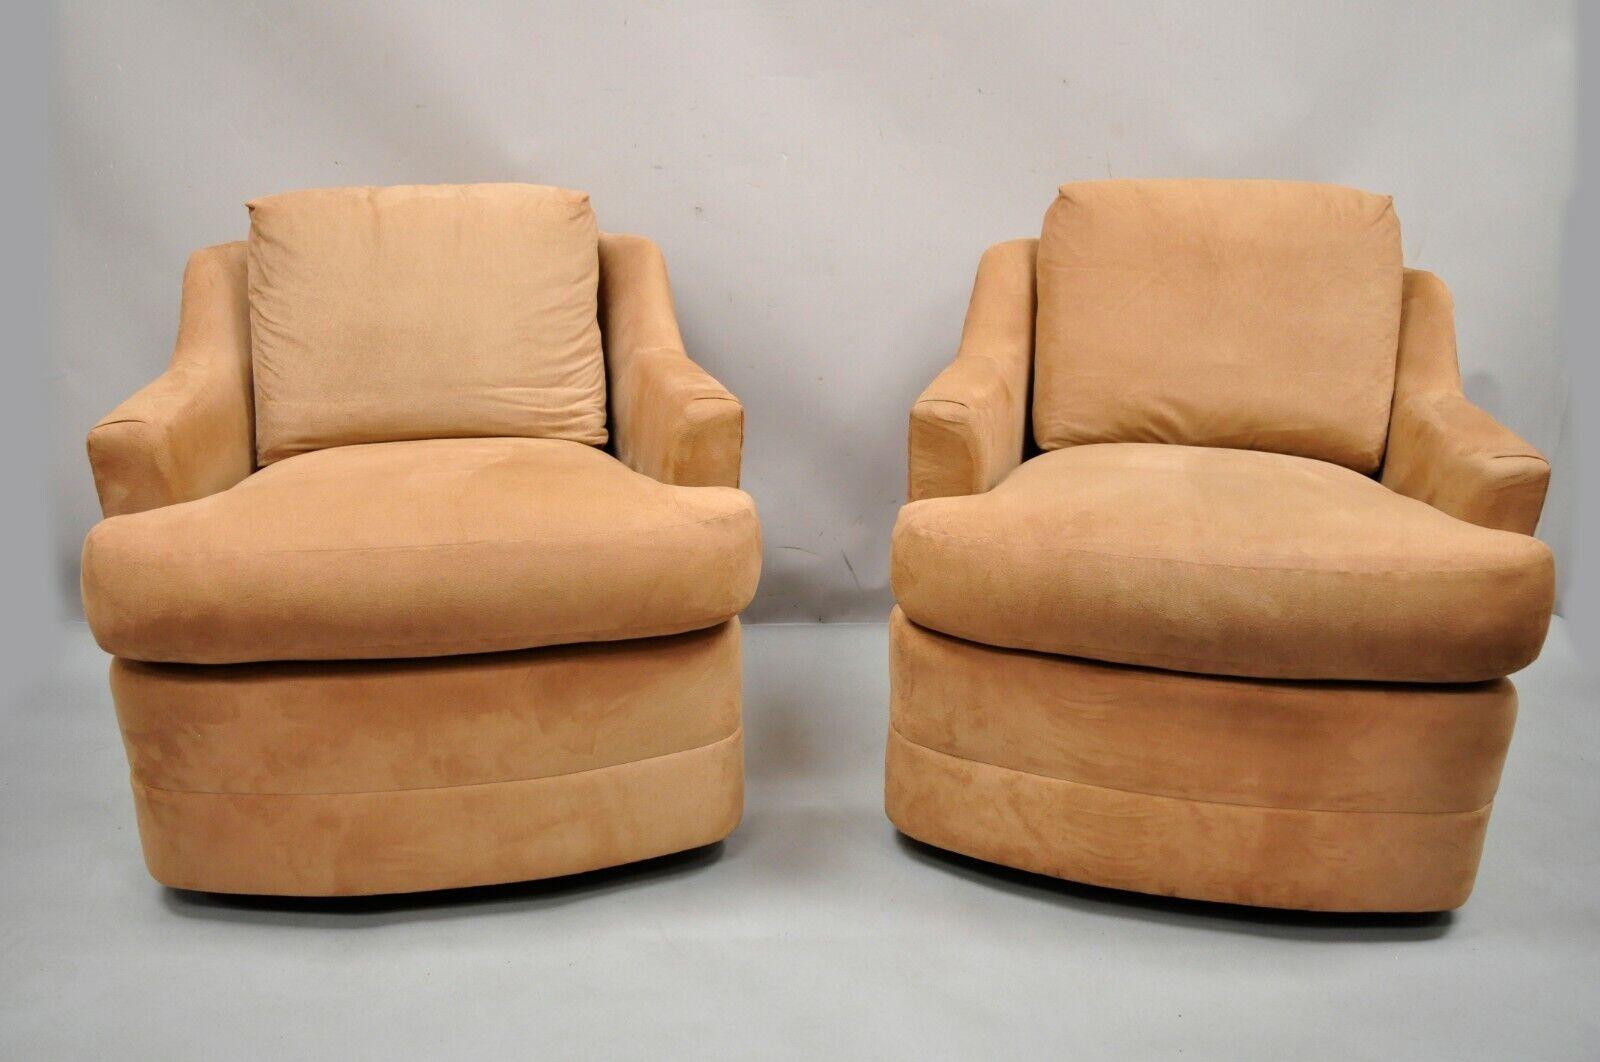 Vintage Mid-Century Modern drehbar braun gepolstert Lounge Club Stühle - ein Paar. Der Artikel verfügt über einen runden Drehsockel, voll gepolsterte Rahmen, Ultrasuede-Stoff, ein sehr schönes Vintage-Paar, klare modernistische Linien, hochwertige